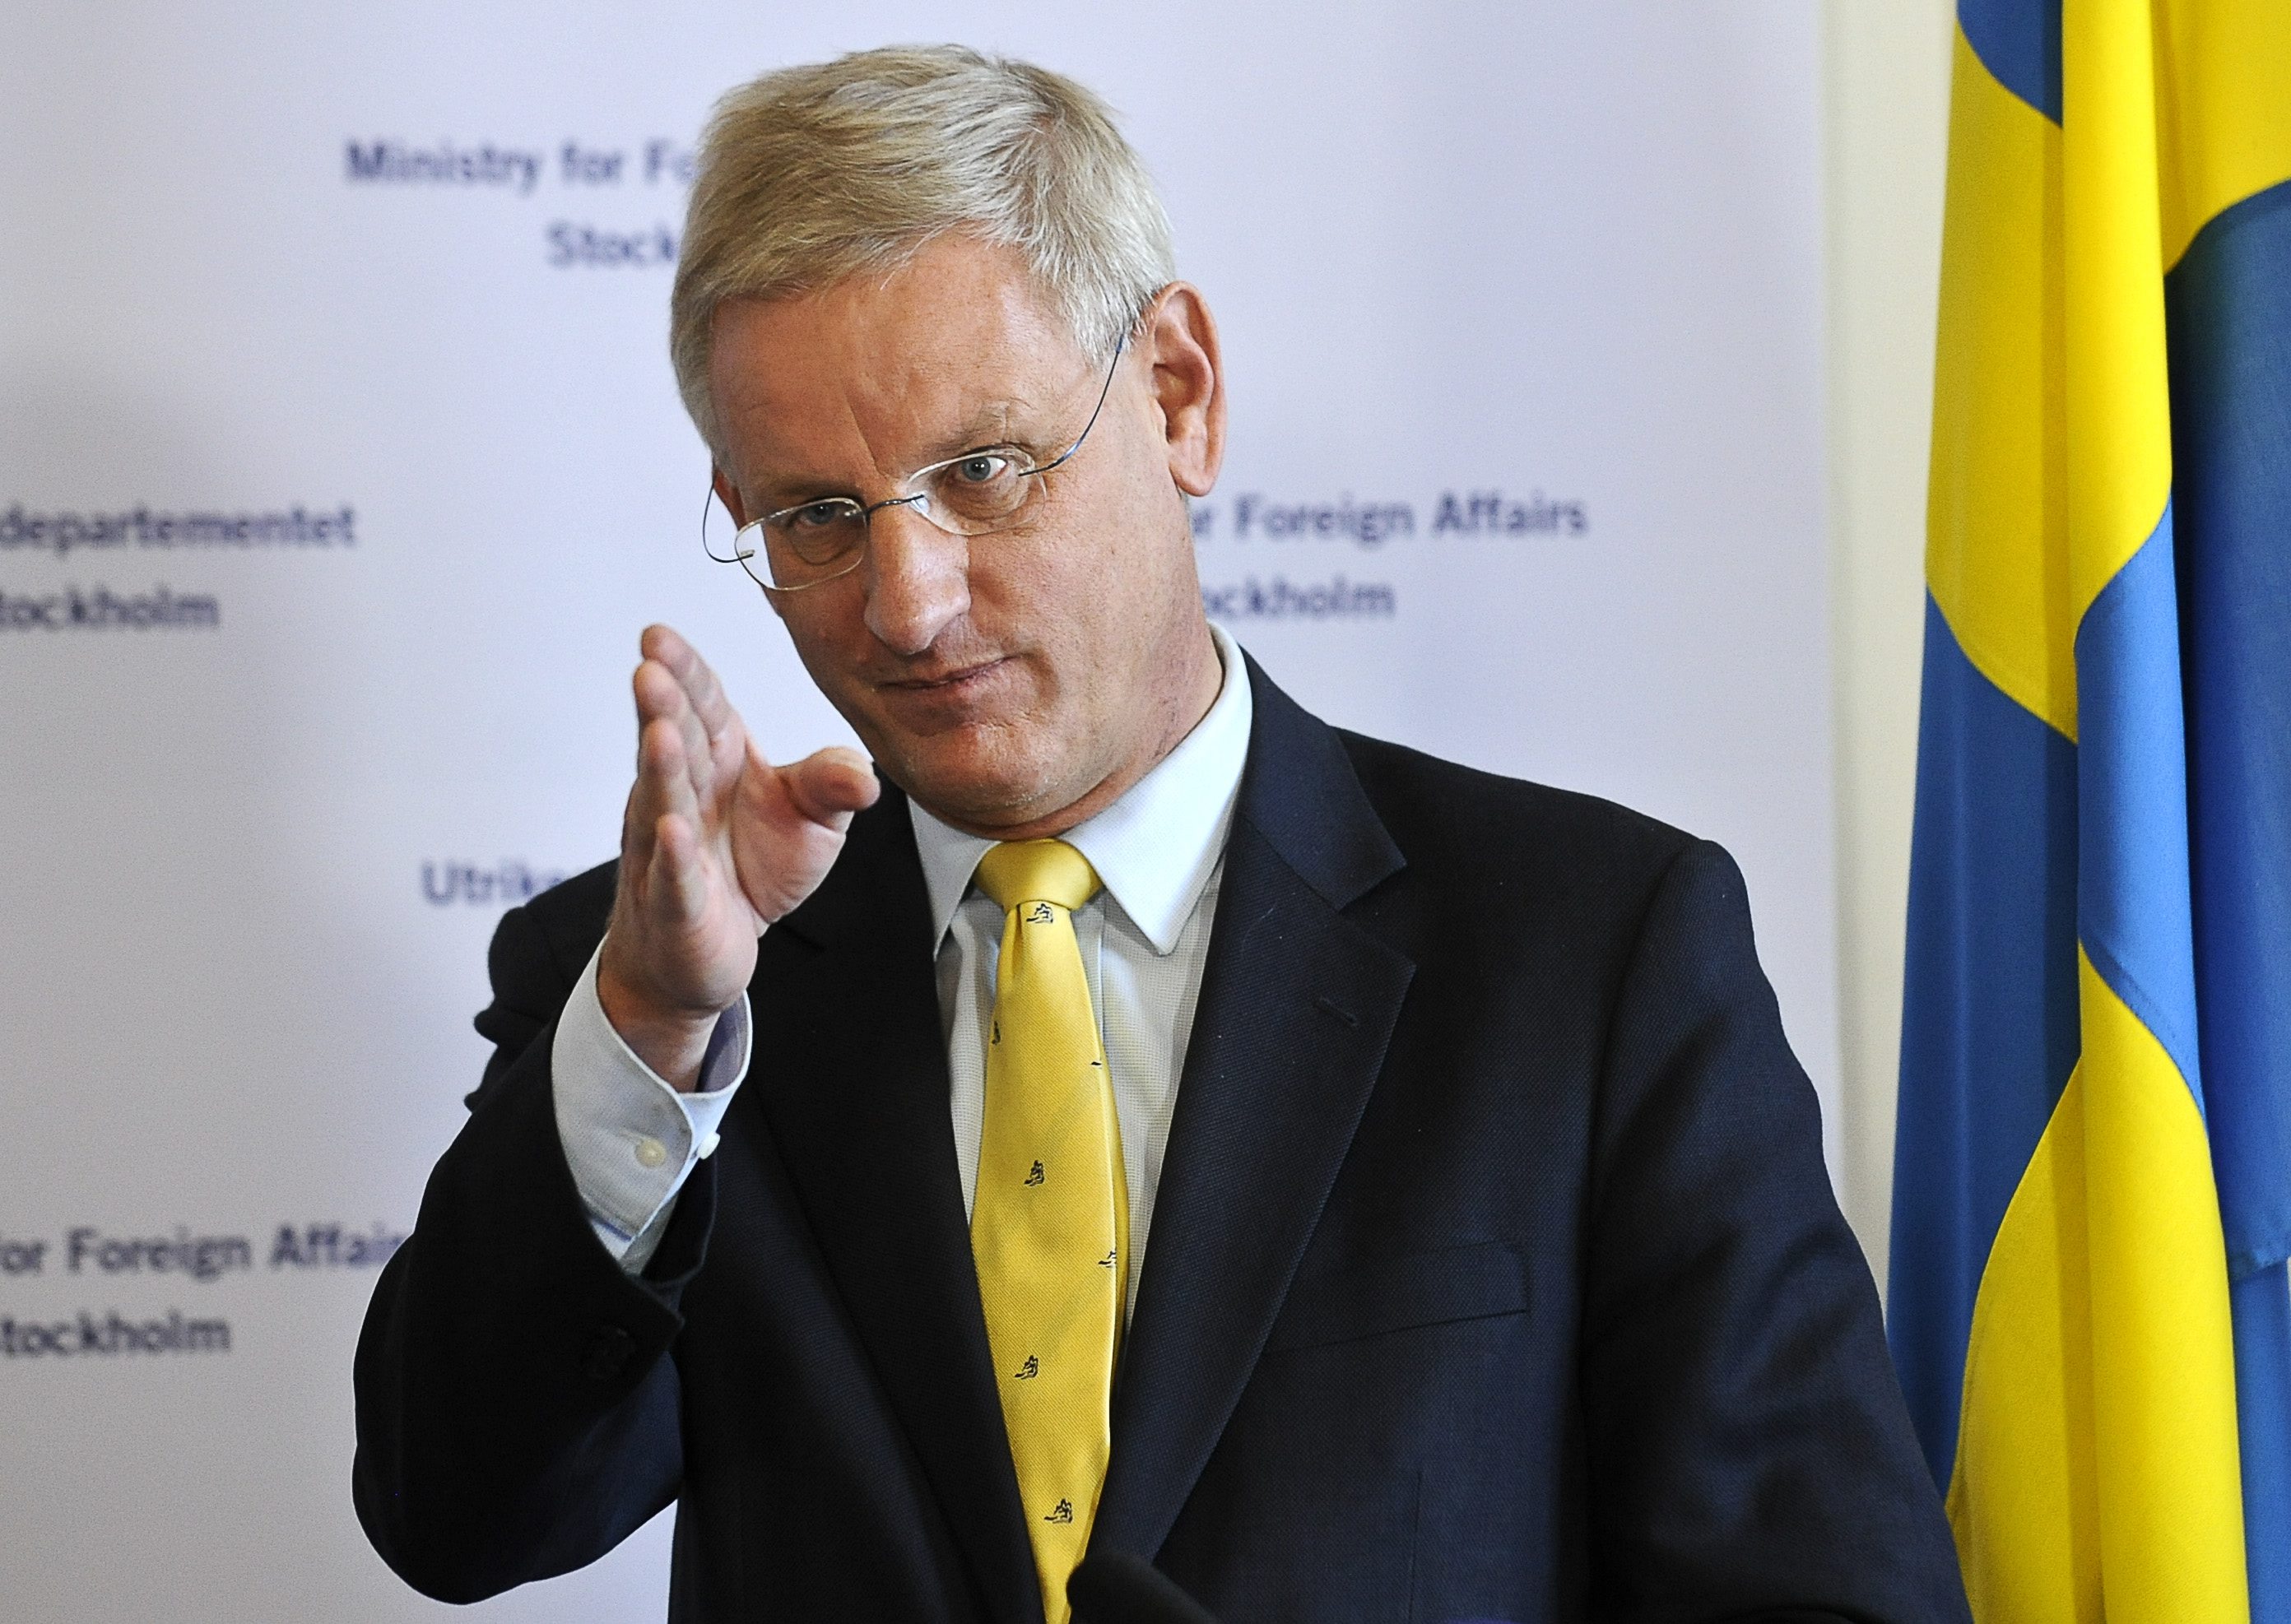 Utrikesminister Carl Bildt igonerarde Jan Eliassons erbjudande om att hjälpa svenska regeringen med att få hem de svenska journalisterna Johan Persson och Martin Schibbye.